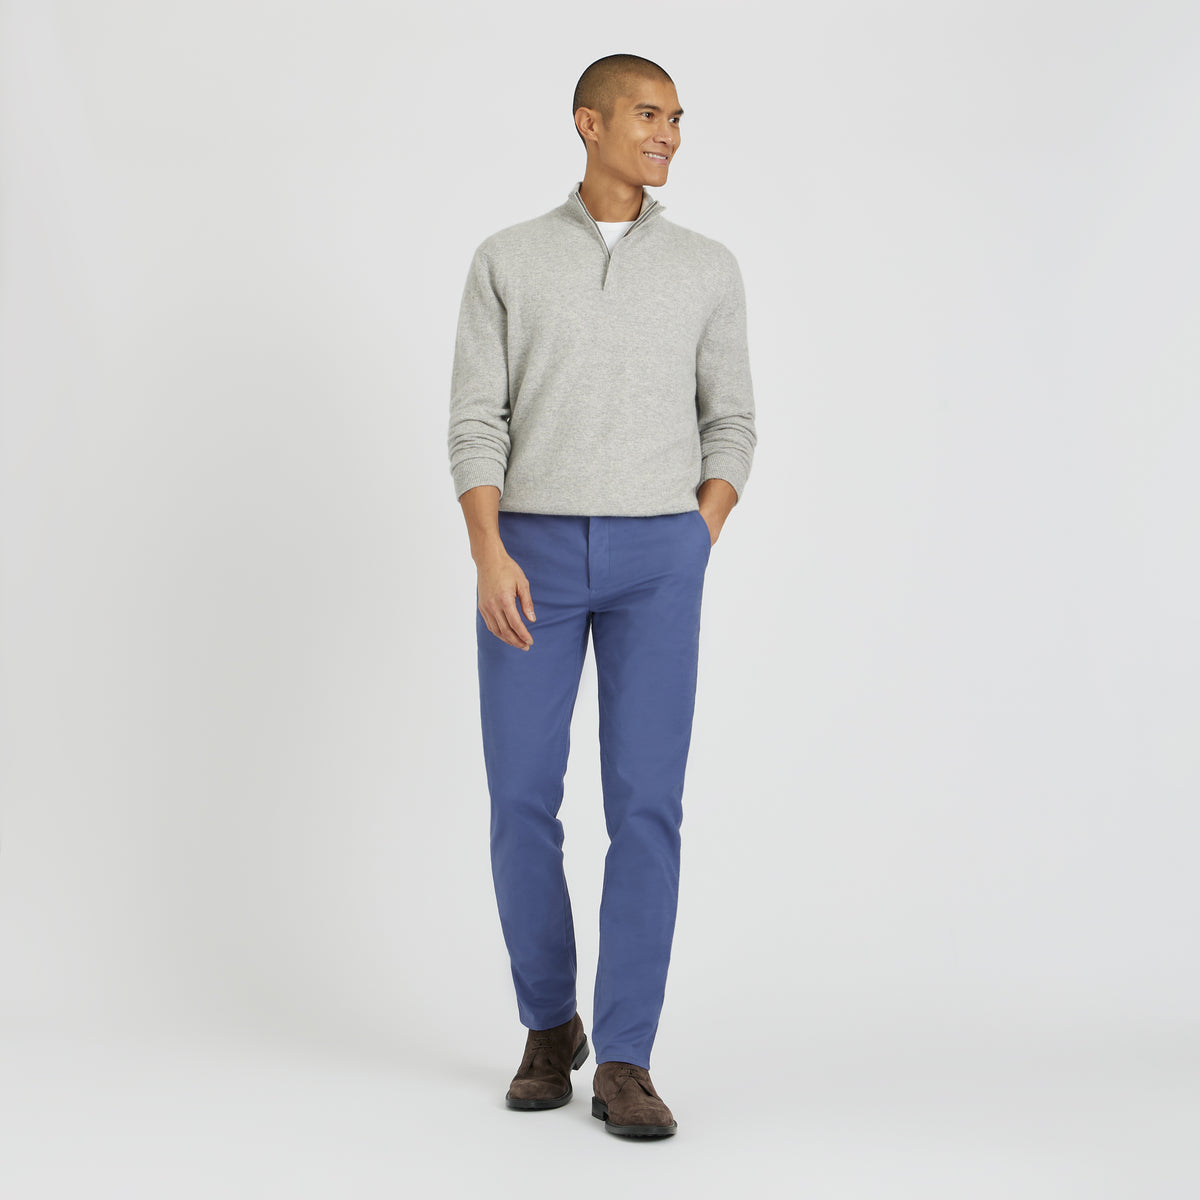 Prussian Blue - Everyday Men's Custom Fit Chino Pants - SPOKE - SPOKE